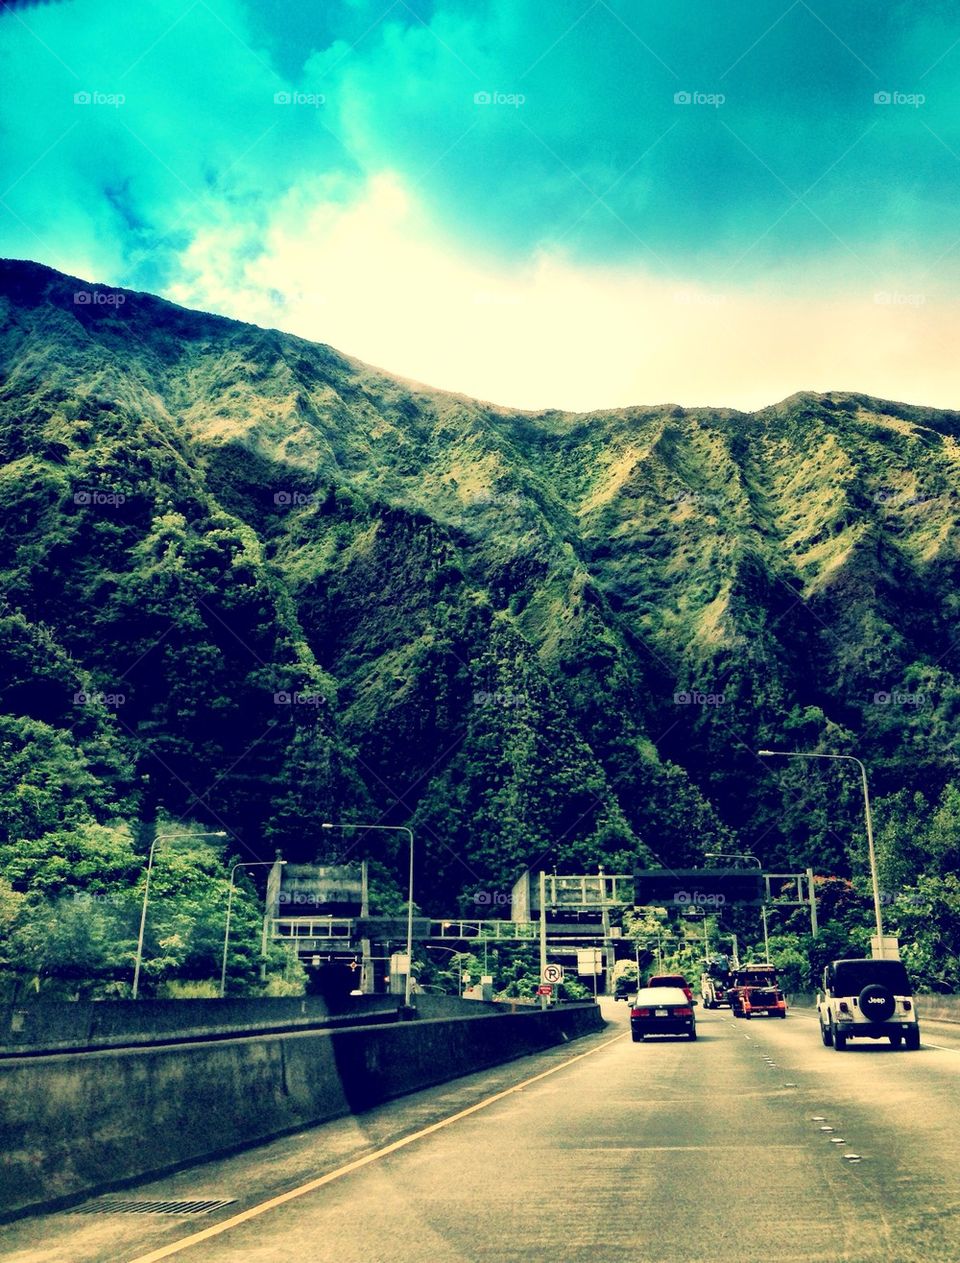 Hawaii road trippin